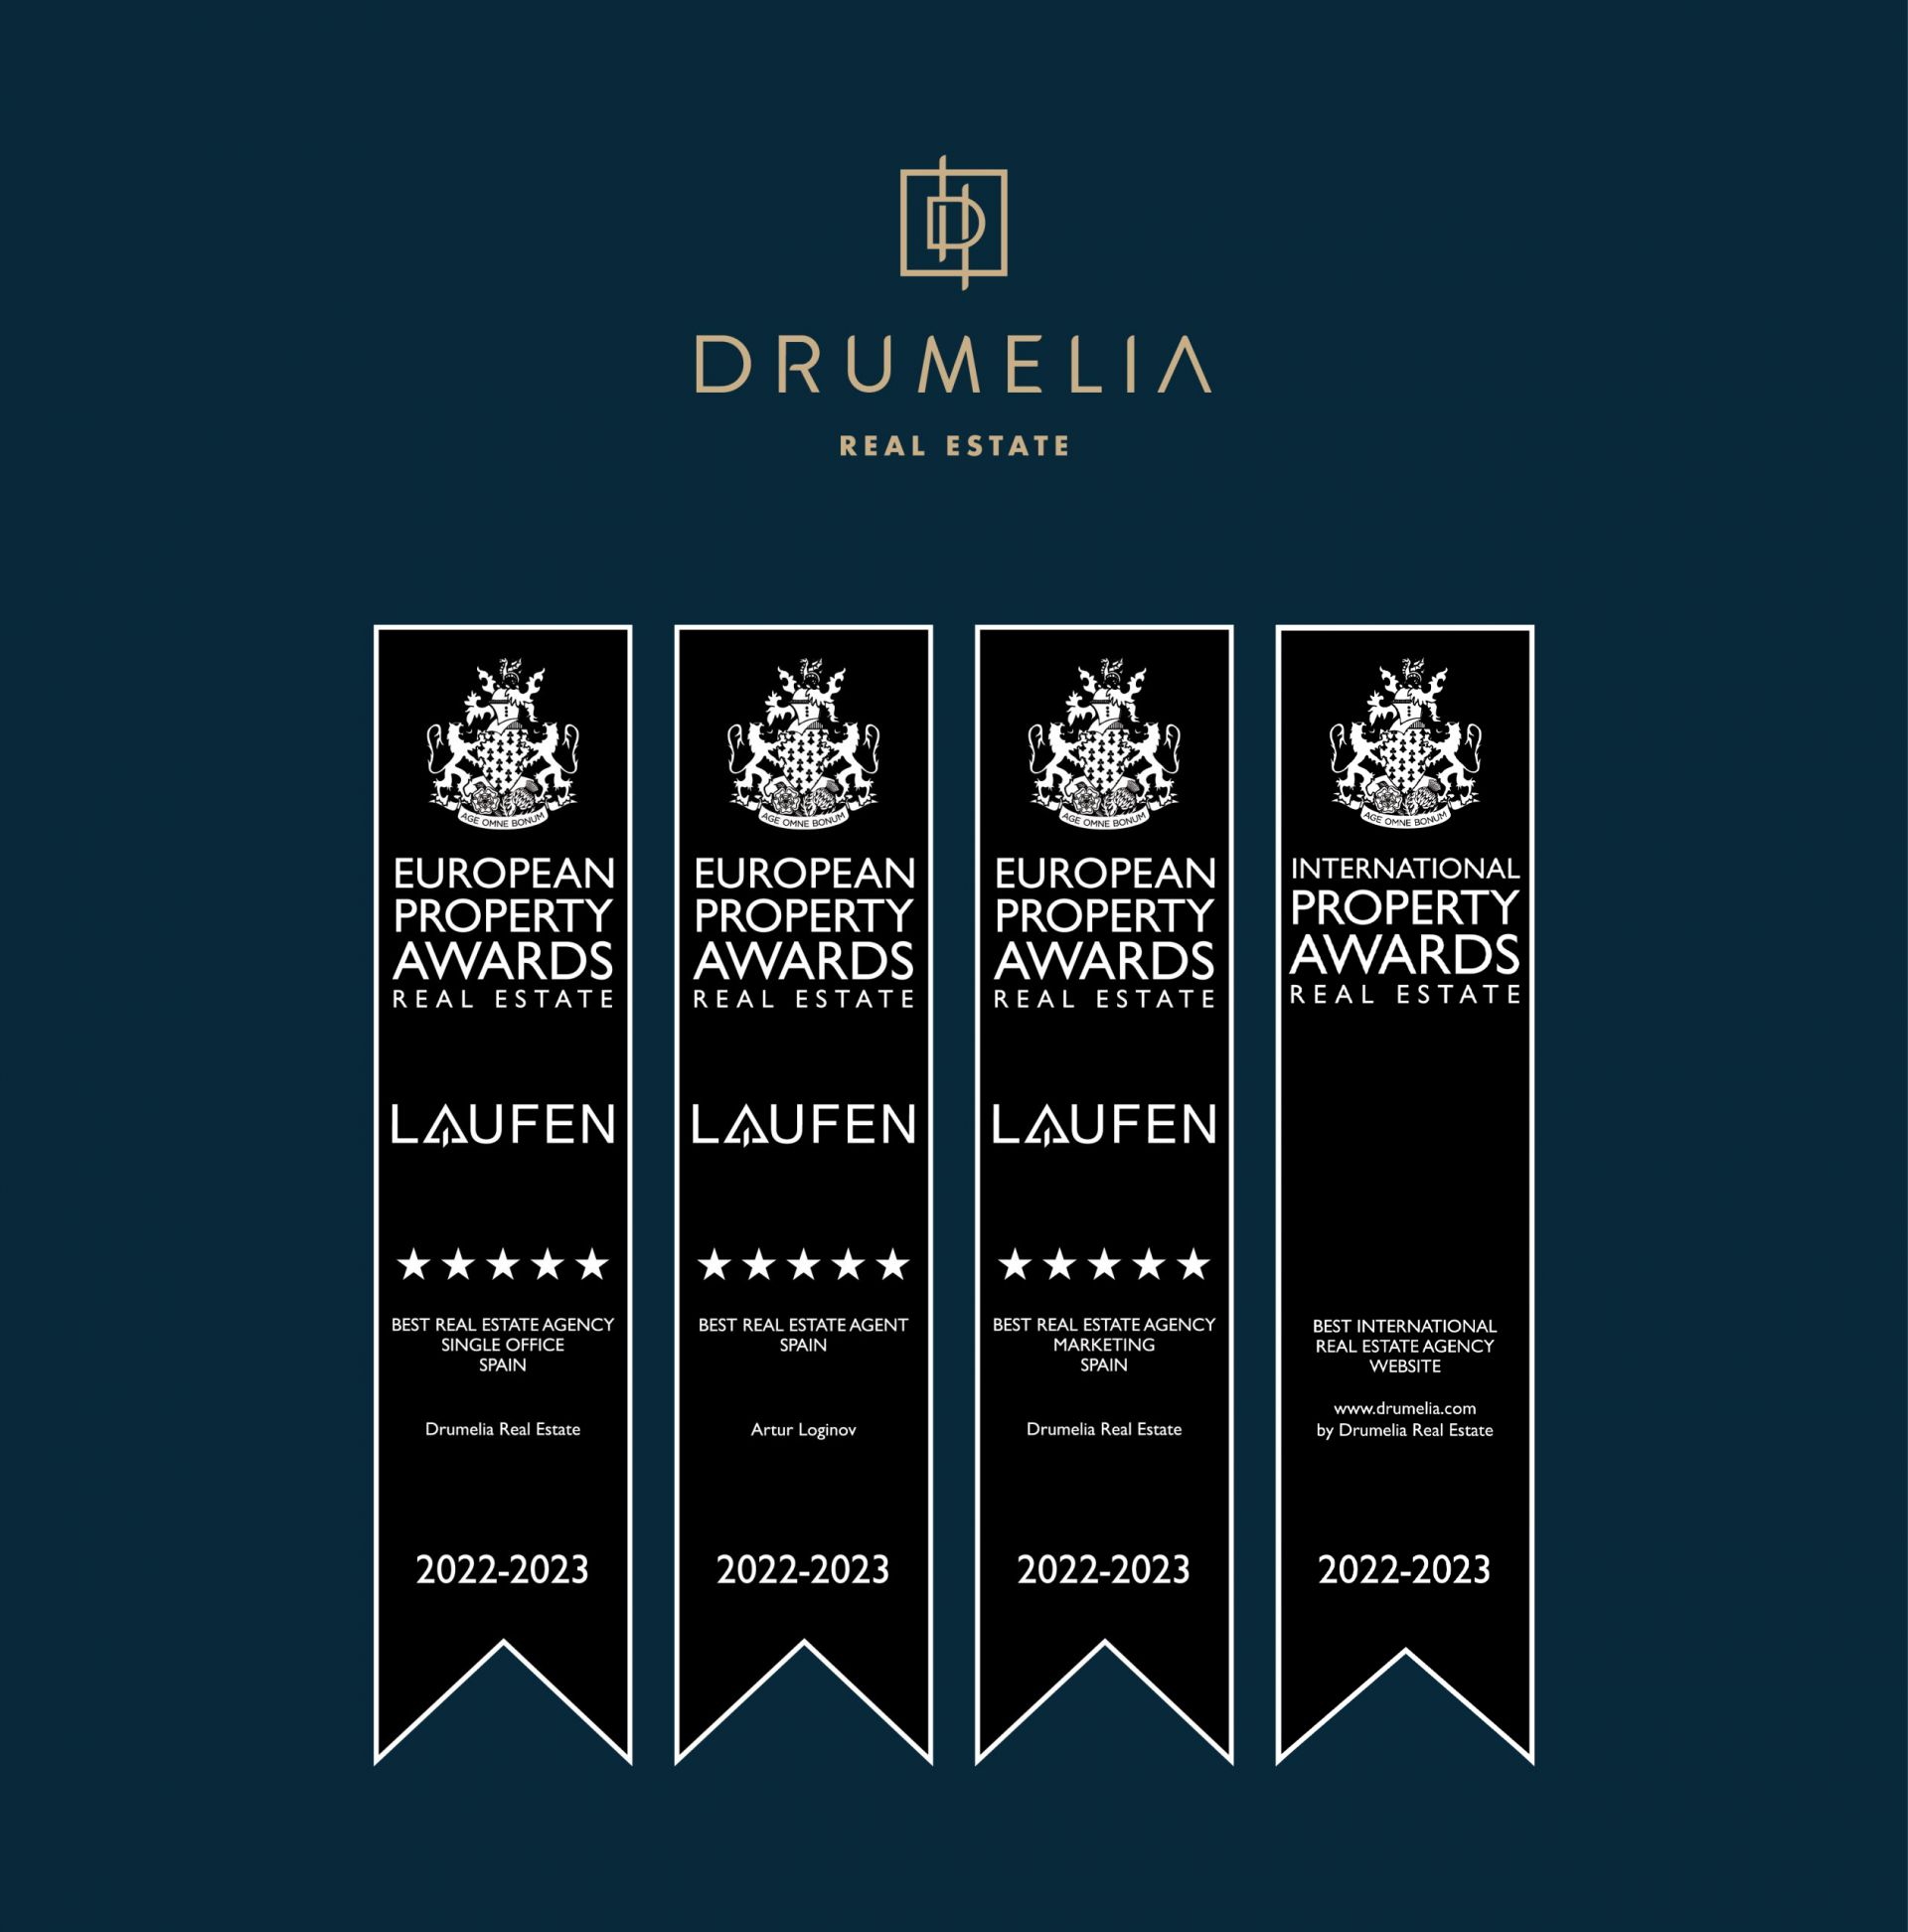 Fotografía de los premios ganados por Drumelia en los Premios Internacionales de Inmobiliaria 2022-2023